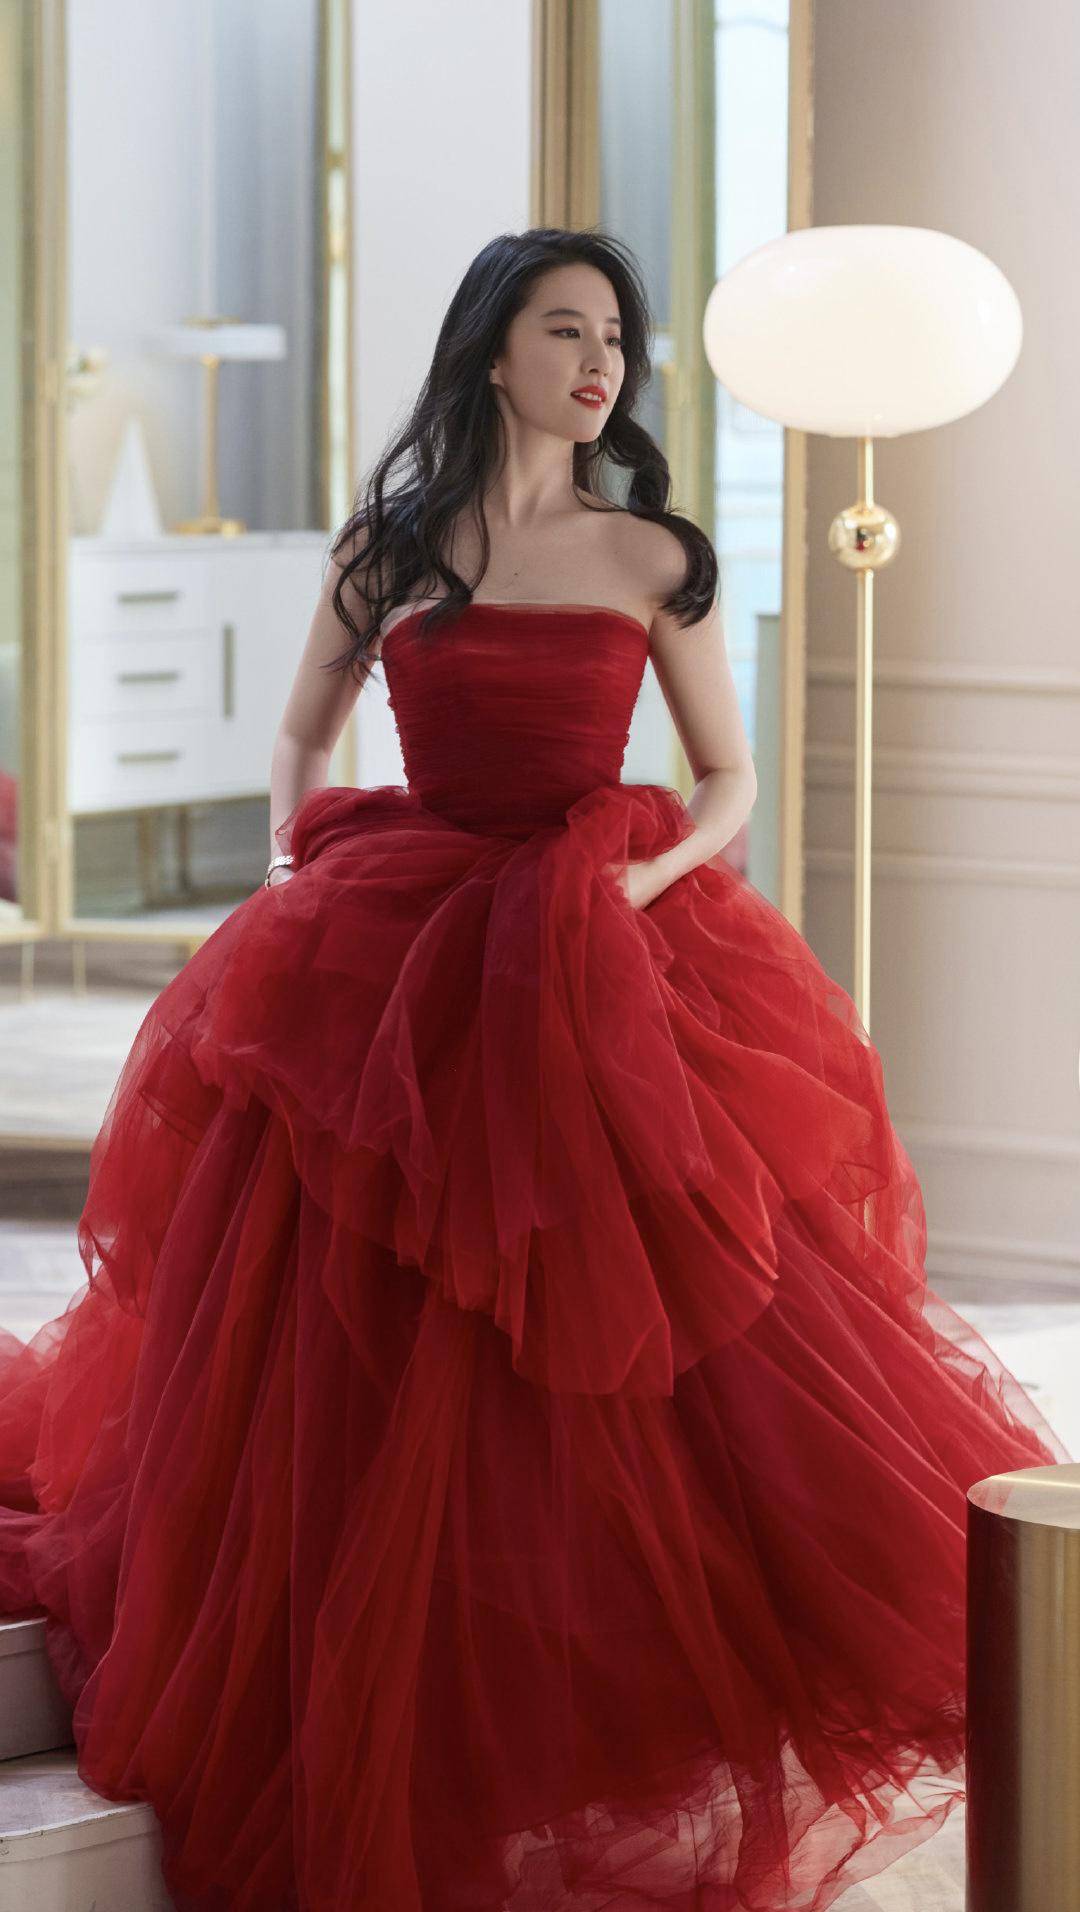 刘亦菲身穿红色抹胸纱裙的造型美得一塌糊涂,抹胸的设计露出她白皙的